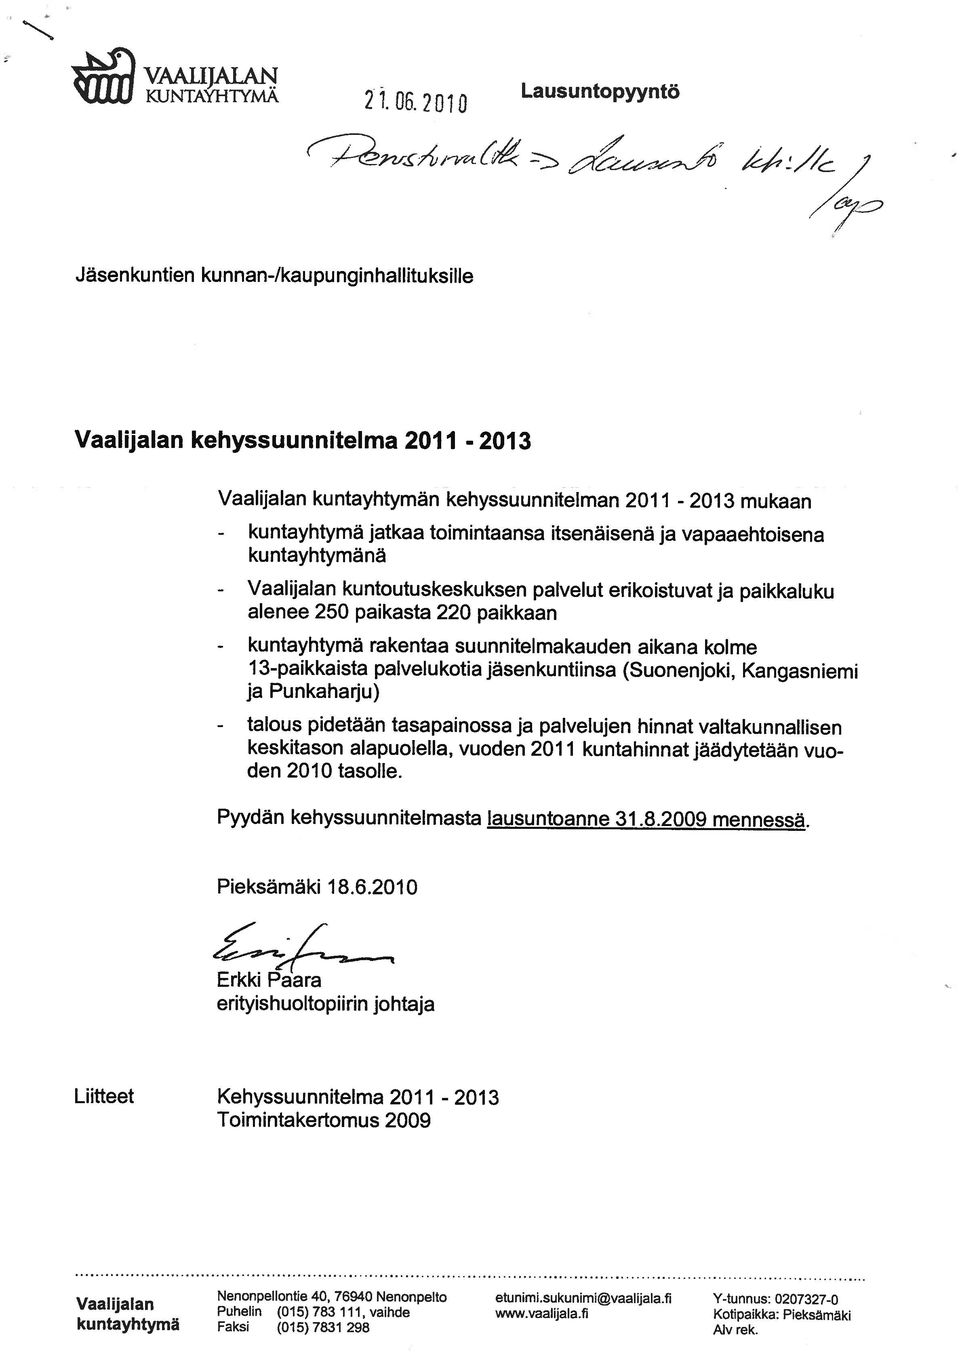 3-paikkaista palvelu kotia jäsenkuntiinsa (Suonenjoki, Kangasniemi Nenonpellontie 40, 76940 Nenonpelto etunimi.sukunimi@vaalijala.